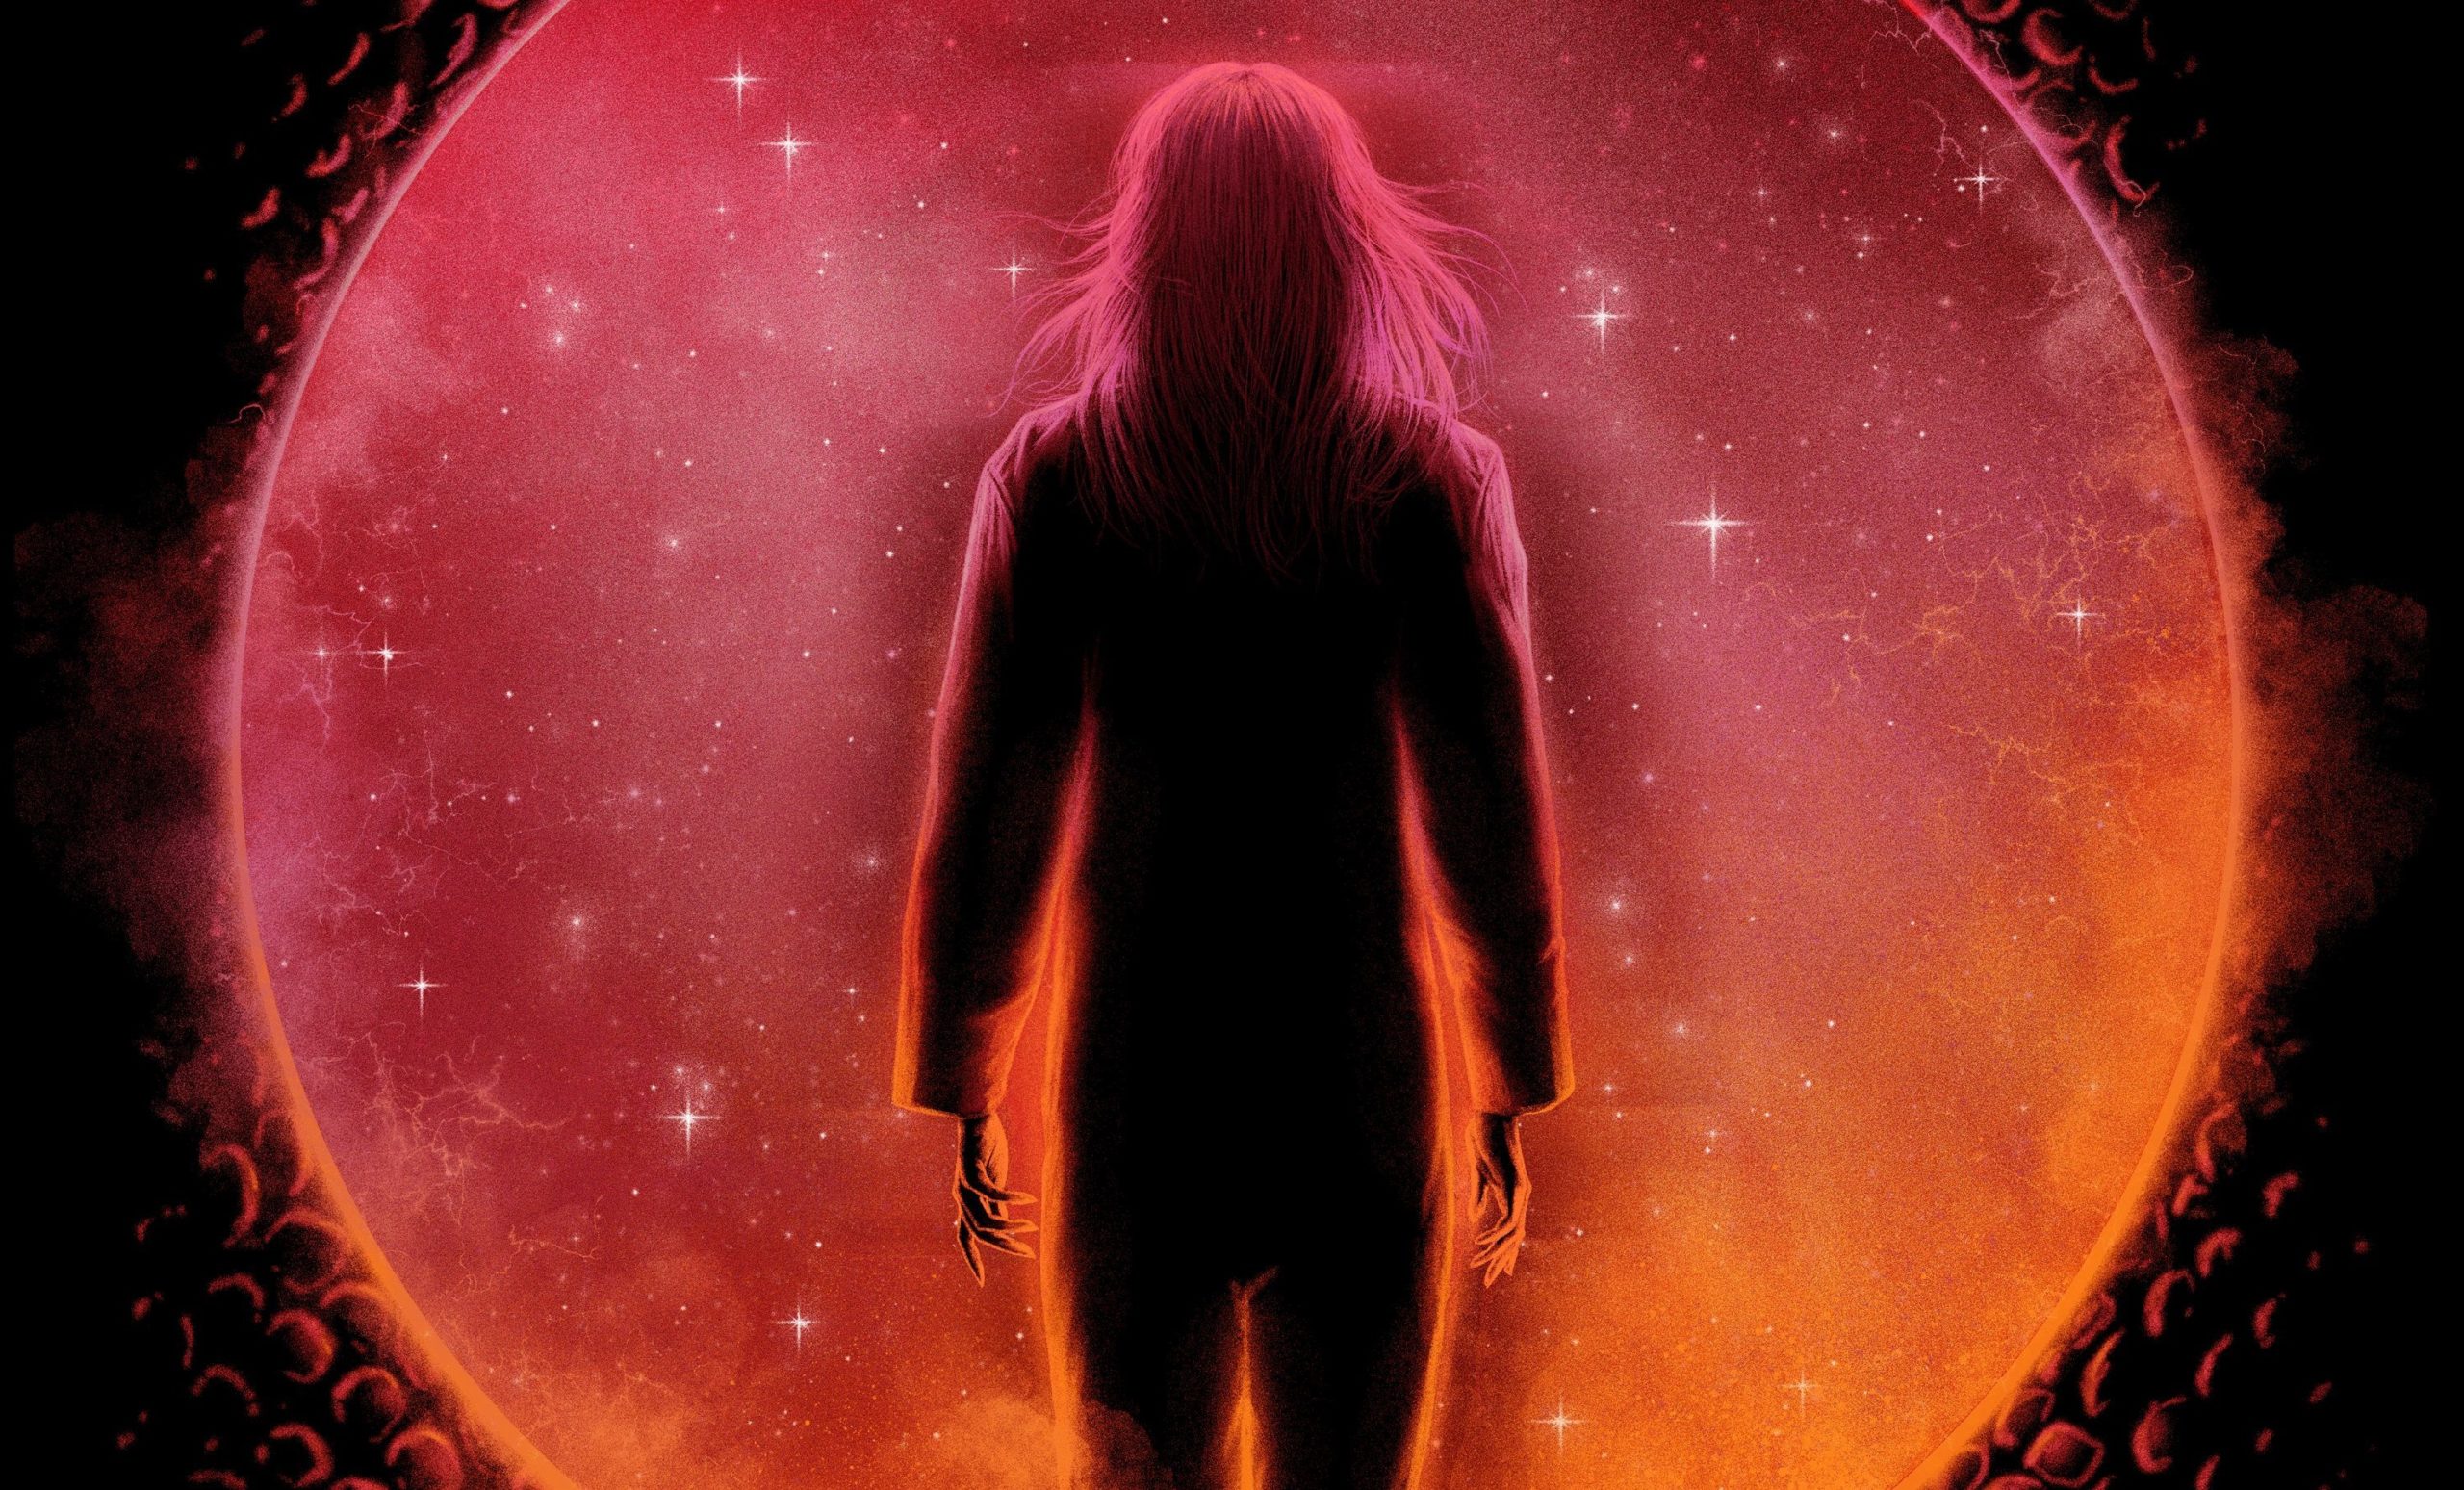 Cosmic Dawn Trailer Shows One Trippy UFO Cult Thriller